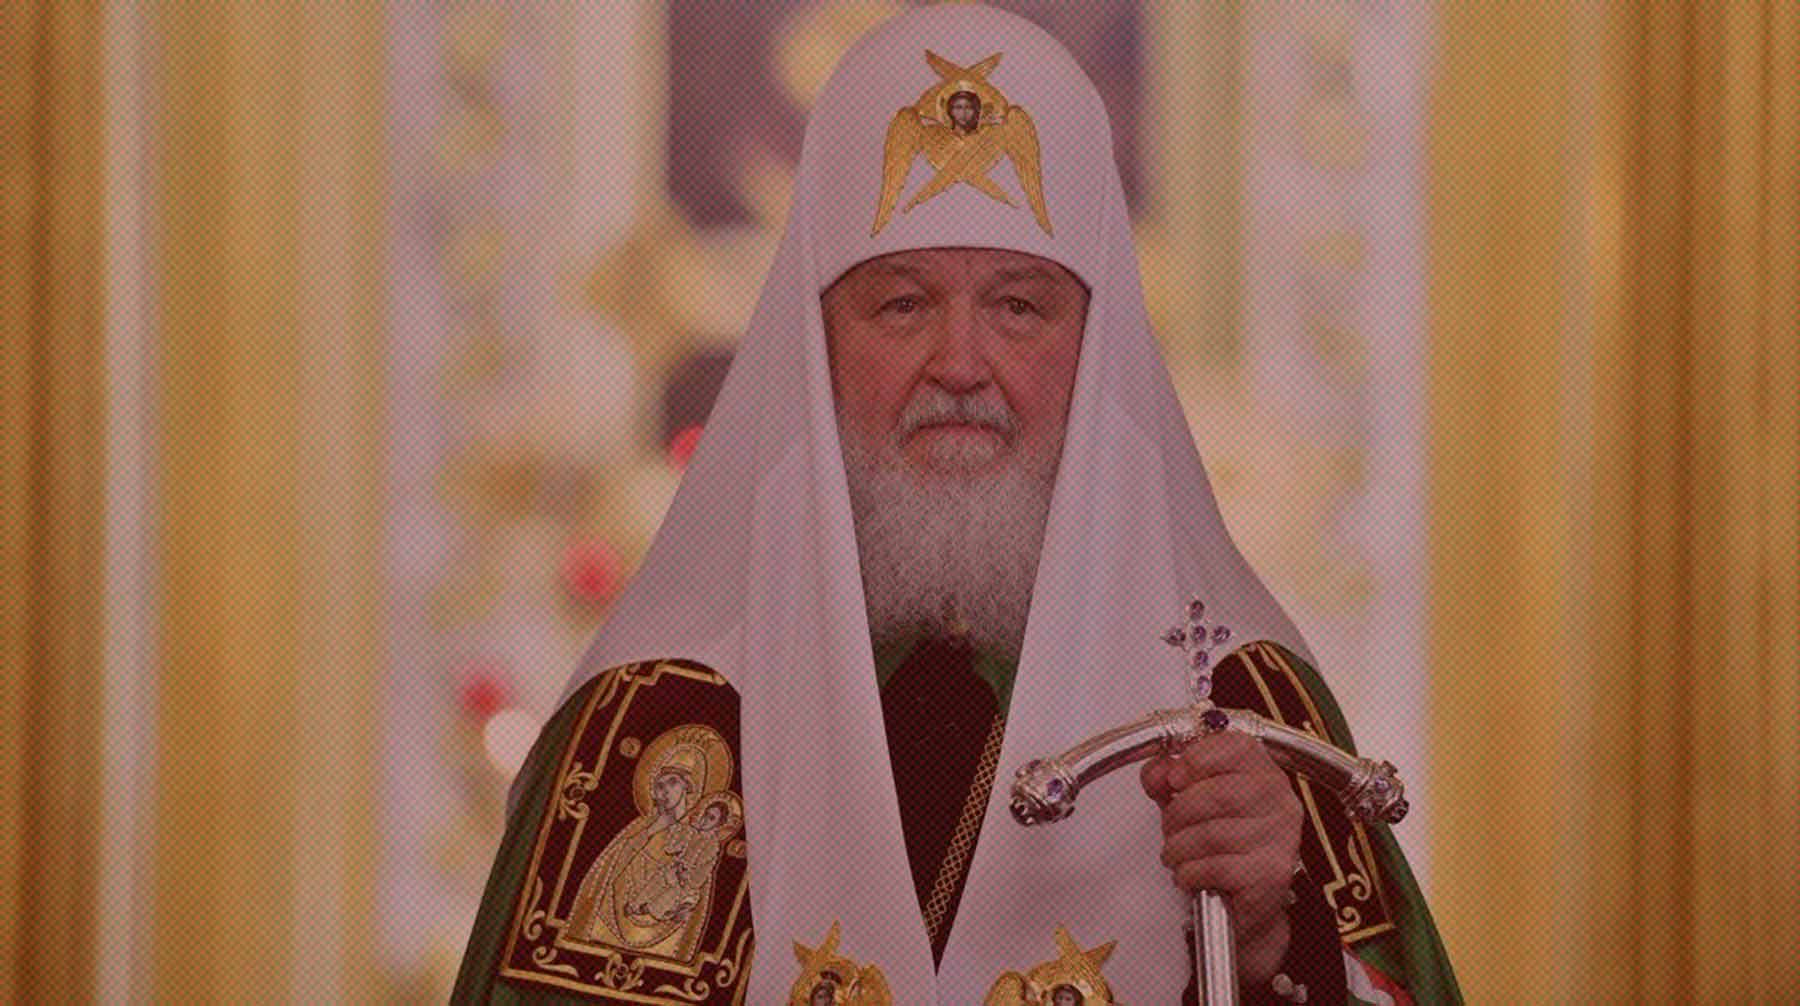 Dailystorm - В ЦК КПРФ прокомментировали заявление патриарха Кирилла о коммунизме как агрессивной квазирелигии